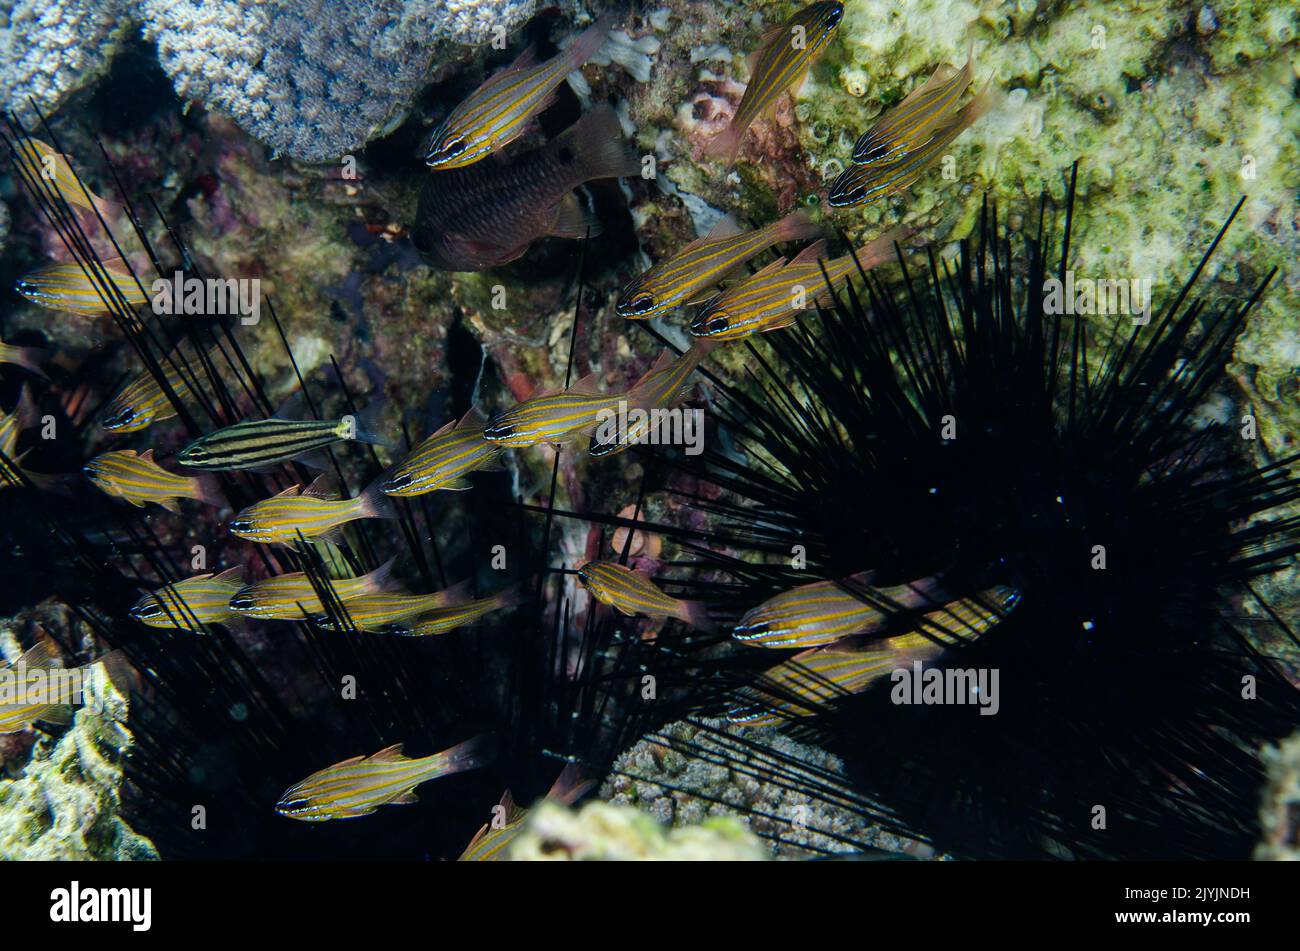 Pesce cardinale a righe gialle, cianosoma di Apogon, Apogonidae, in simbiosi mutualistica con un riccio di mare Diadema, Anilao, Filippine, Asia Foto Stock